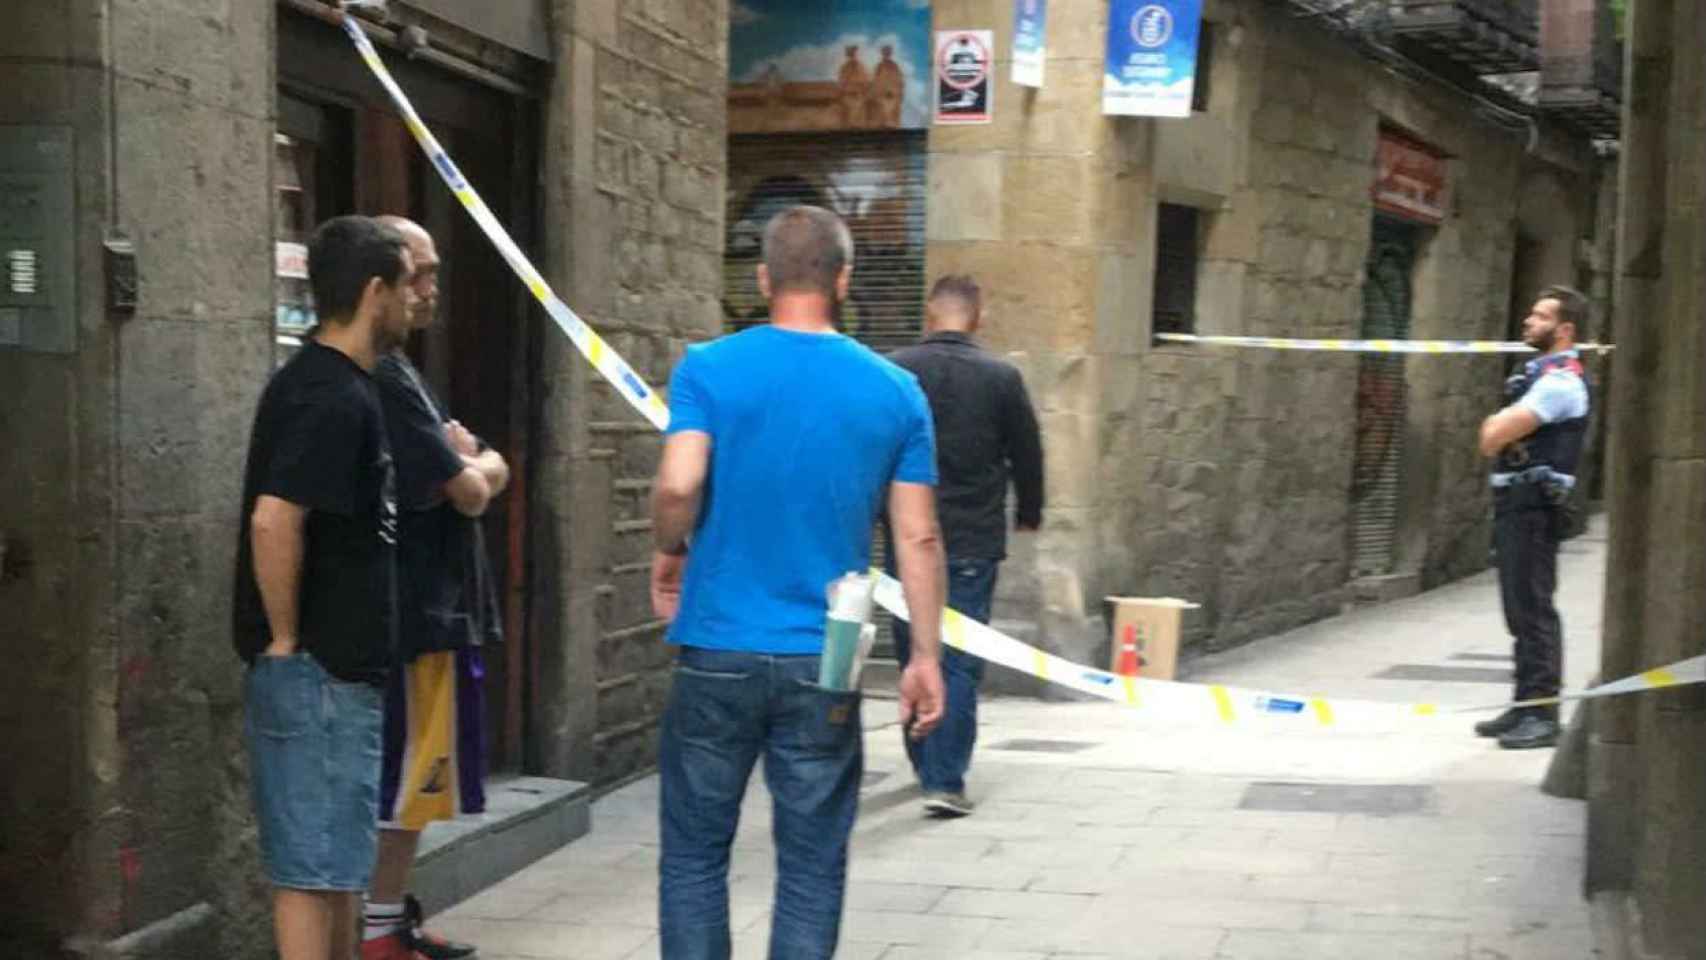 El homicidio se produjo el verano pasado en el Gòtic